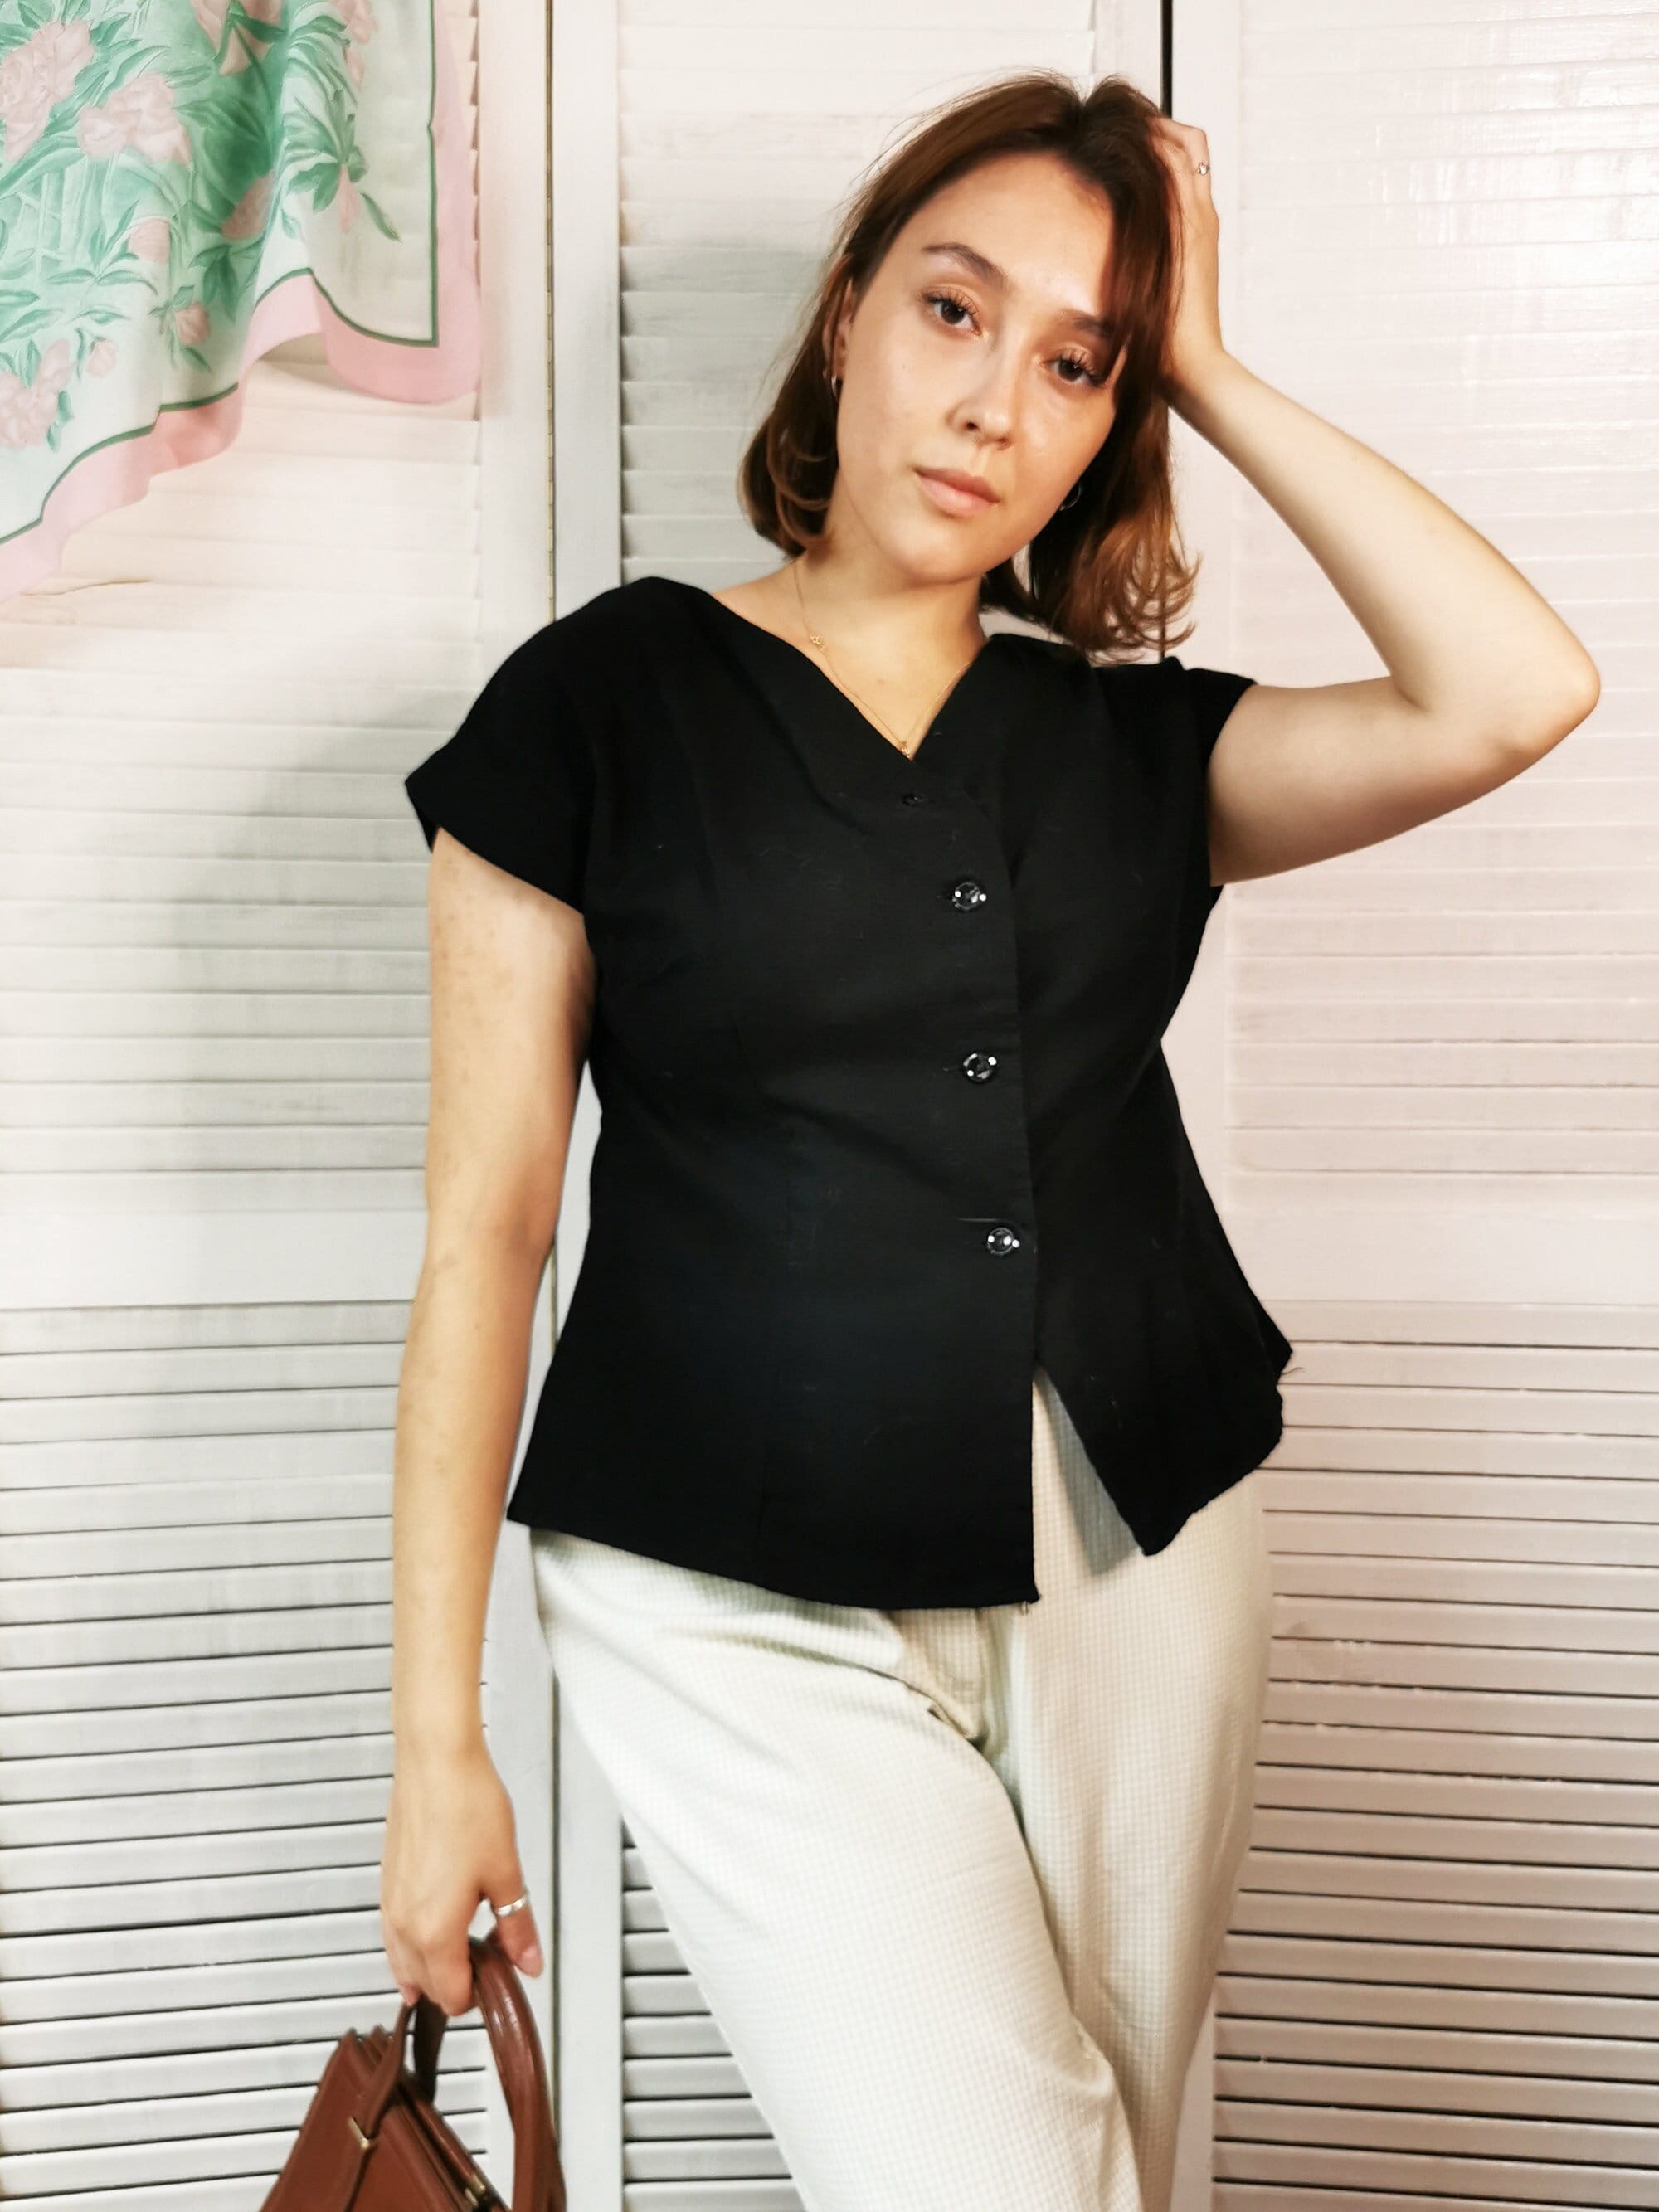 Vintage 80s minimalist black button down blouse top